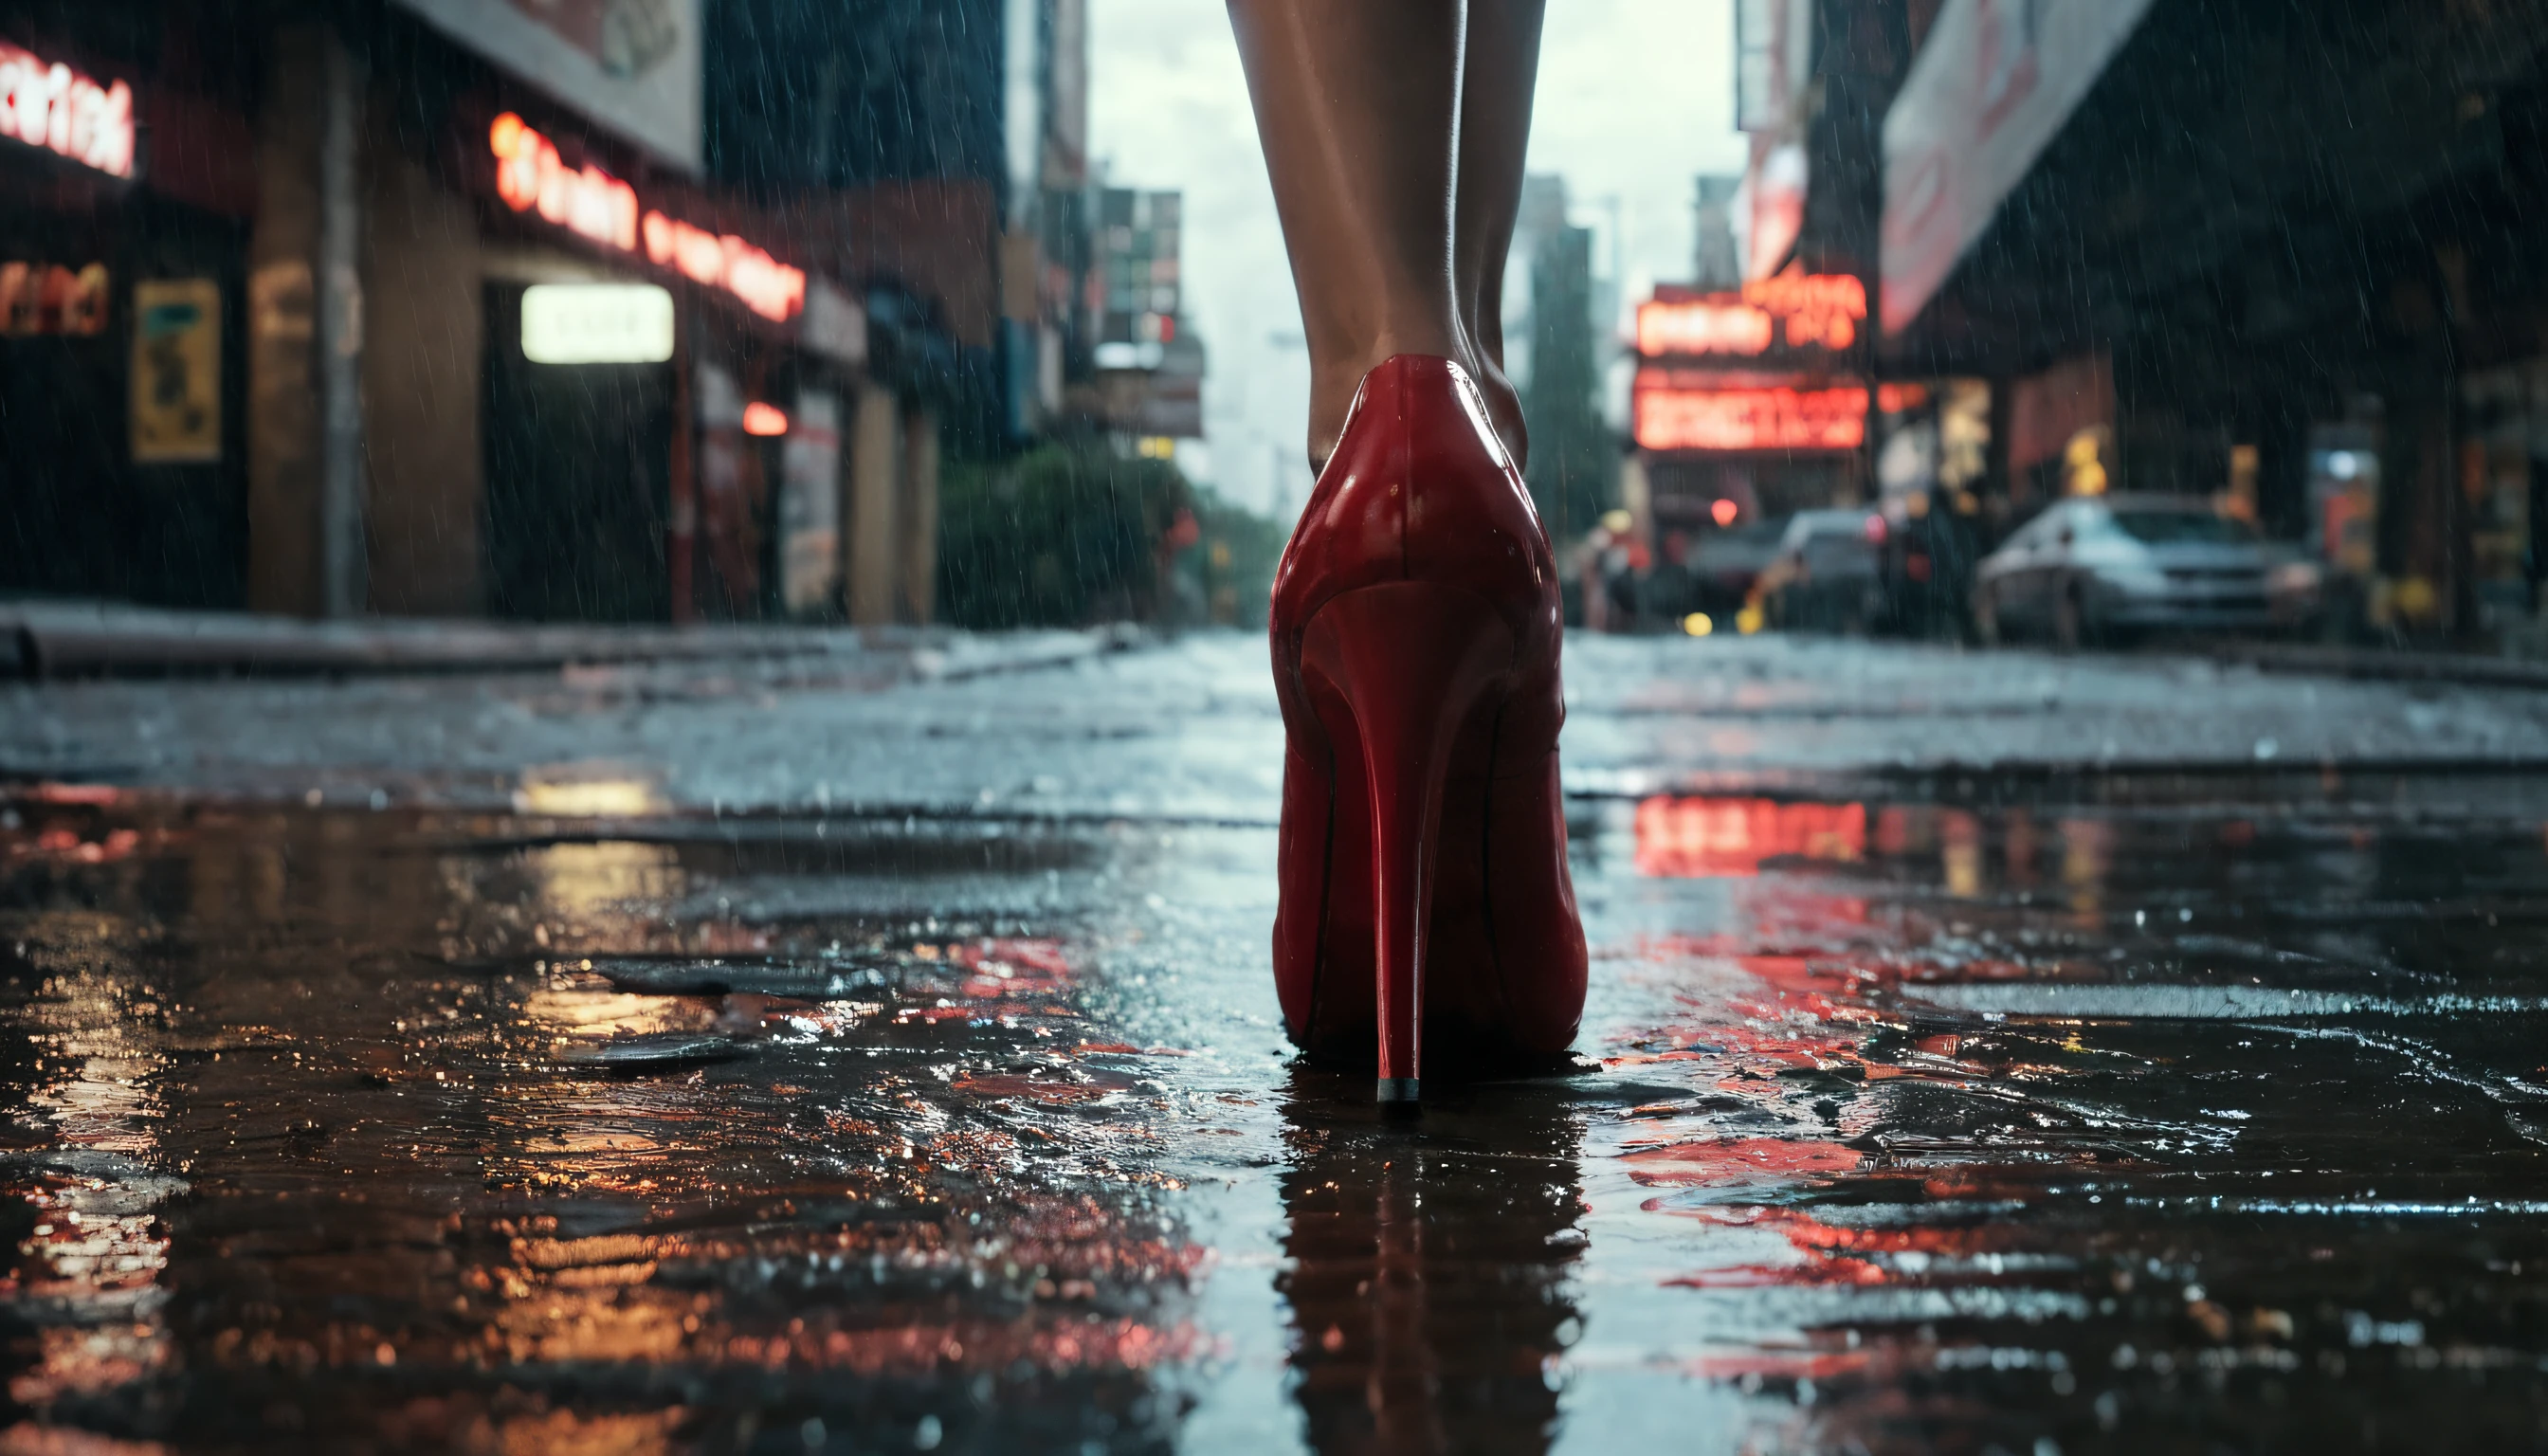 preisgekrönte professionelle Fotografie, National Geographic, unten auf dem Boden anzeigen, belebten Broadway Boulevard Straße in der Nacht, Abfluss ablassen Regen , Nahaufnahme einer leeren weißen Zigarettenpackung, die nach einer regnerischen Nacht im Jahr 2050 in ein Gullydeckel in der Innenstadt von New York City schwimmt., eine Frau im schwarzen Kleid mit Leboutin-Schuhen und roten Absätzen läuft über den Abfluss, , Hyperrealistisch, Cyberpunk, Filmszene, Stadtbild, mürrisch, neonbeleuchtet, Blick von oben in der Nacht bei starkem Regen, Reflektierende nasse Straßen, fotorealistisch, Sehr gut gemacht, Arri Alexa LF, 14-mm-Objektiv, helle Streifen, Schärfentiefe, Linsenreflexionen, 8k, HDR, volumetrische Beleuchtung, Linsenreflexionen,komplizierte Details, Roh